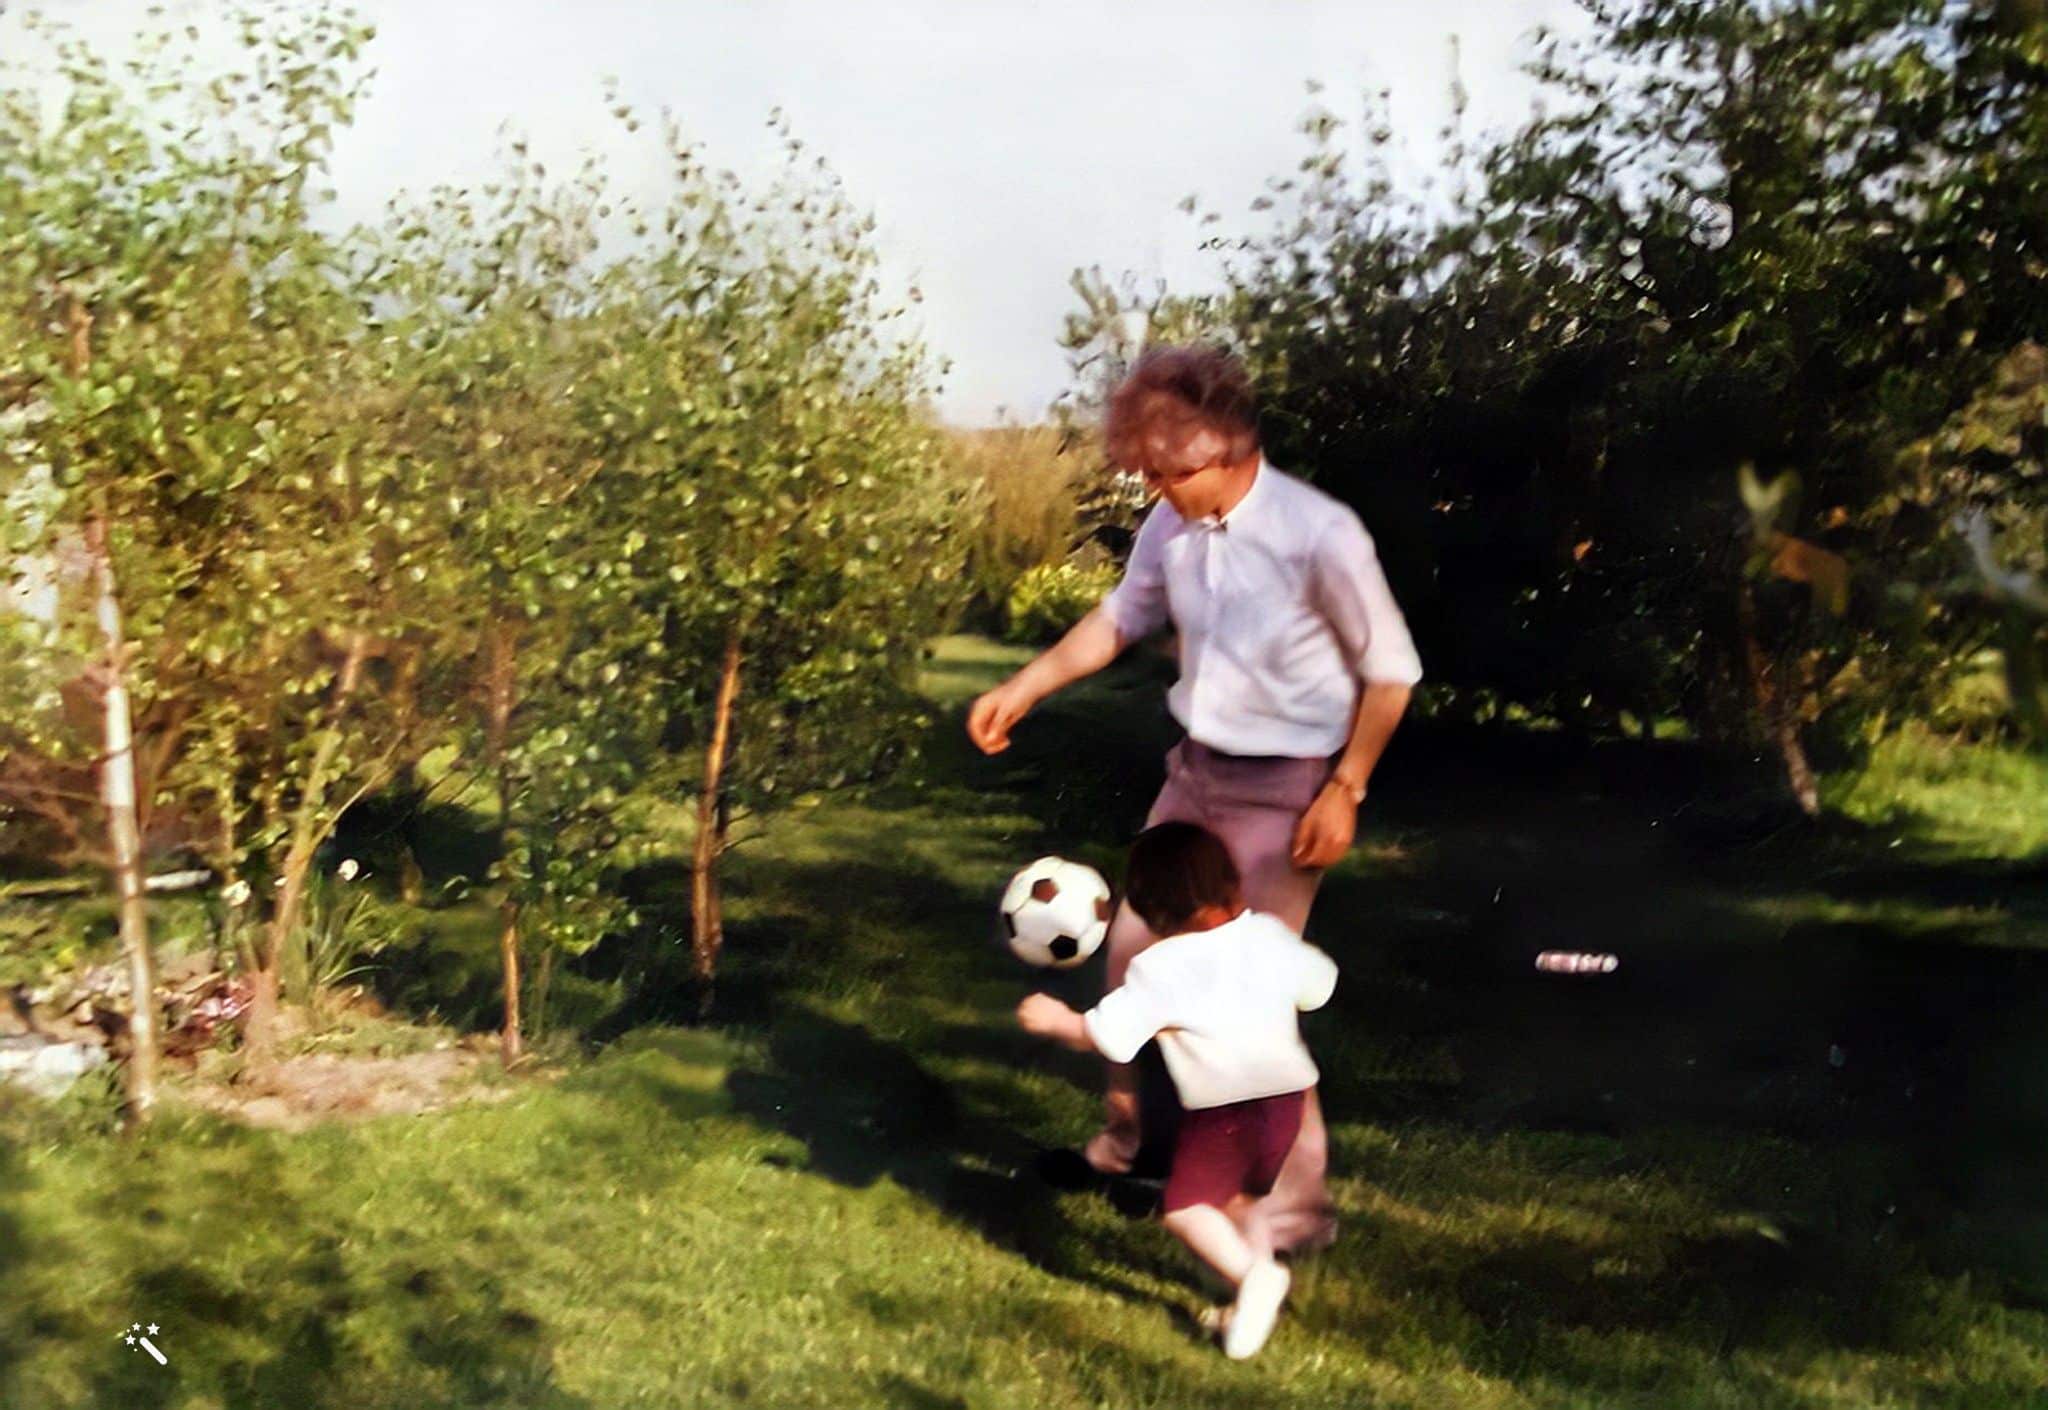 Ramón den äldre spelar fotboll. Foto förbättrat och färgåterställt av MyHeritage